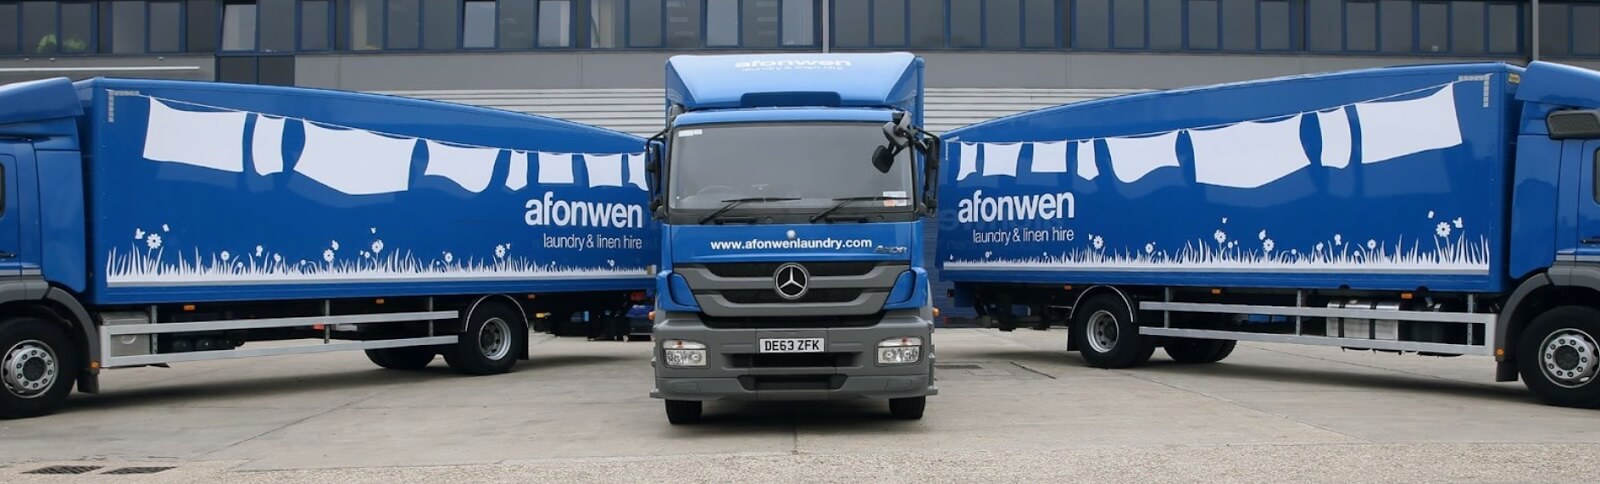 Afonwen blue truck fleet in front of loading docks